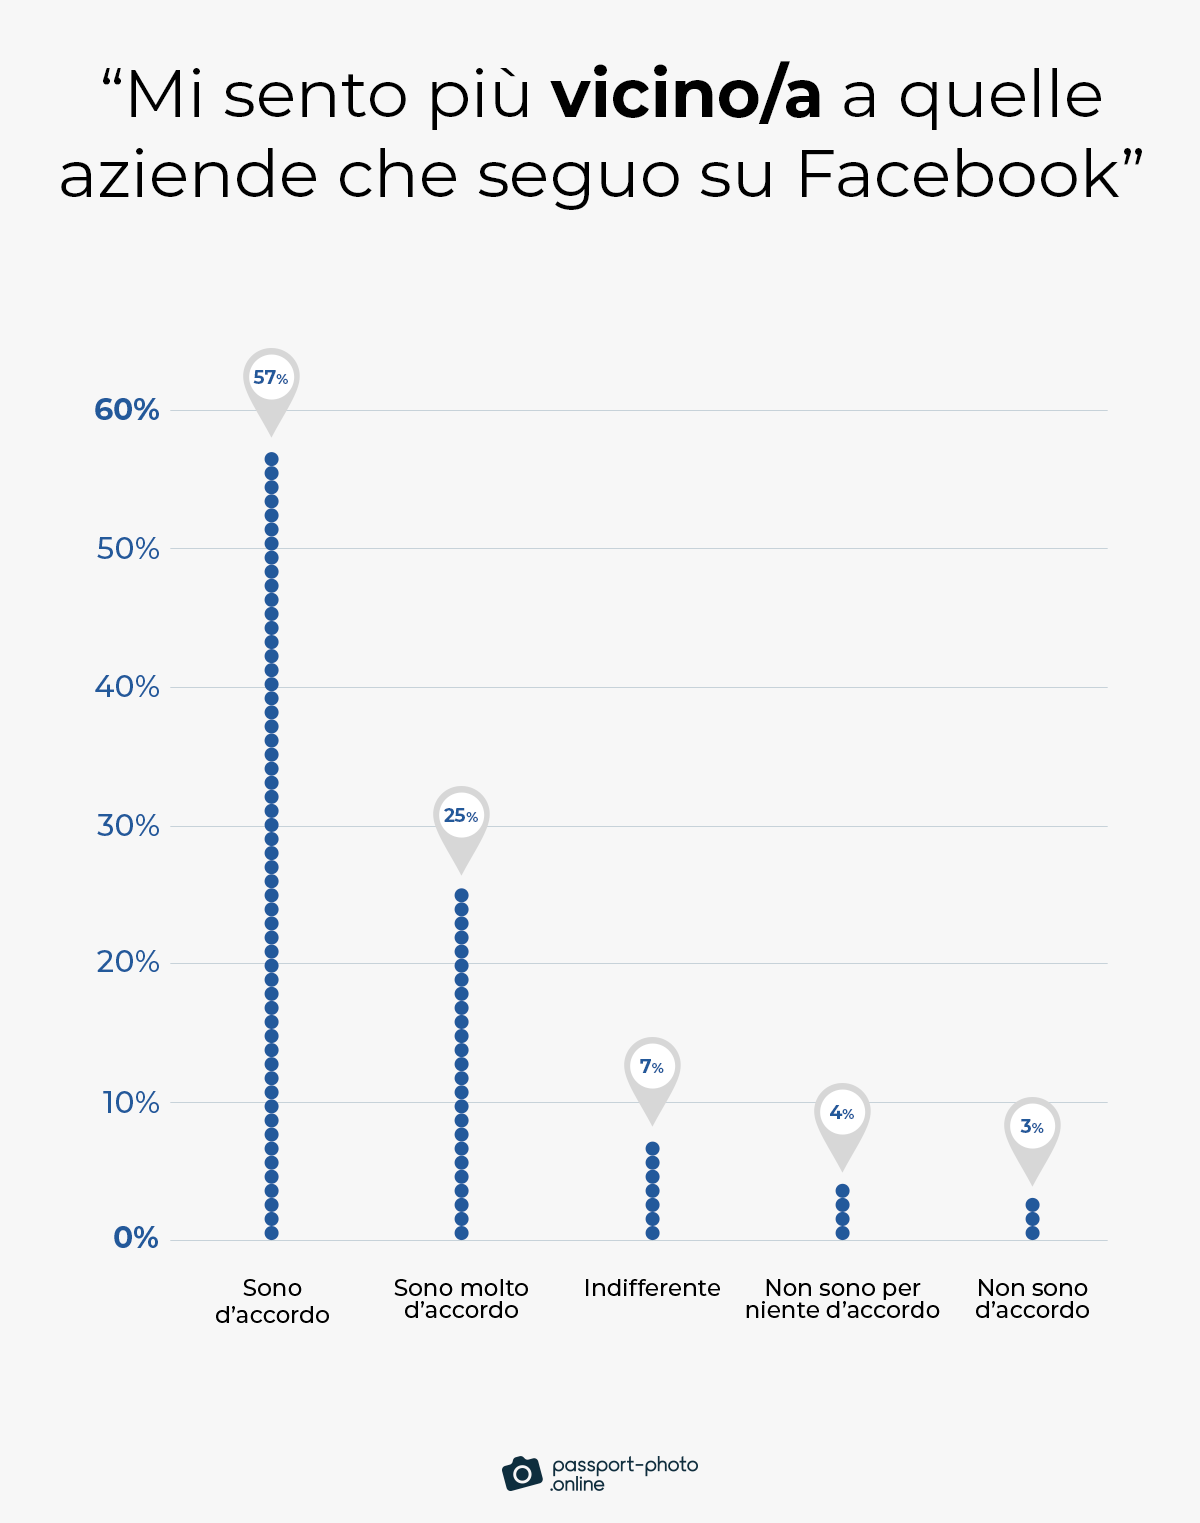 l’82% dei fruitori di Facebook percepisceo una connessione più forte con i marchi che segue sulla piattaforma rispetto a quelli che non segue